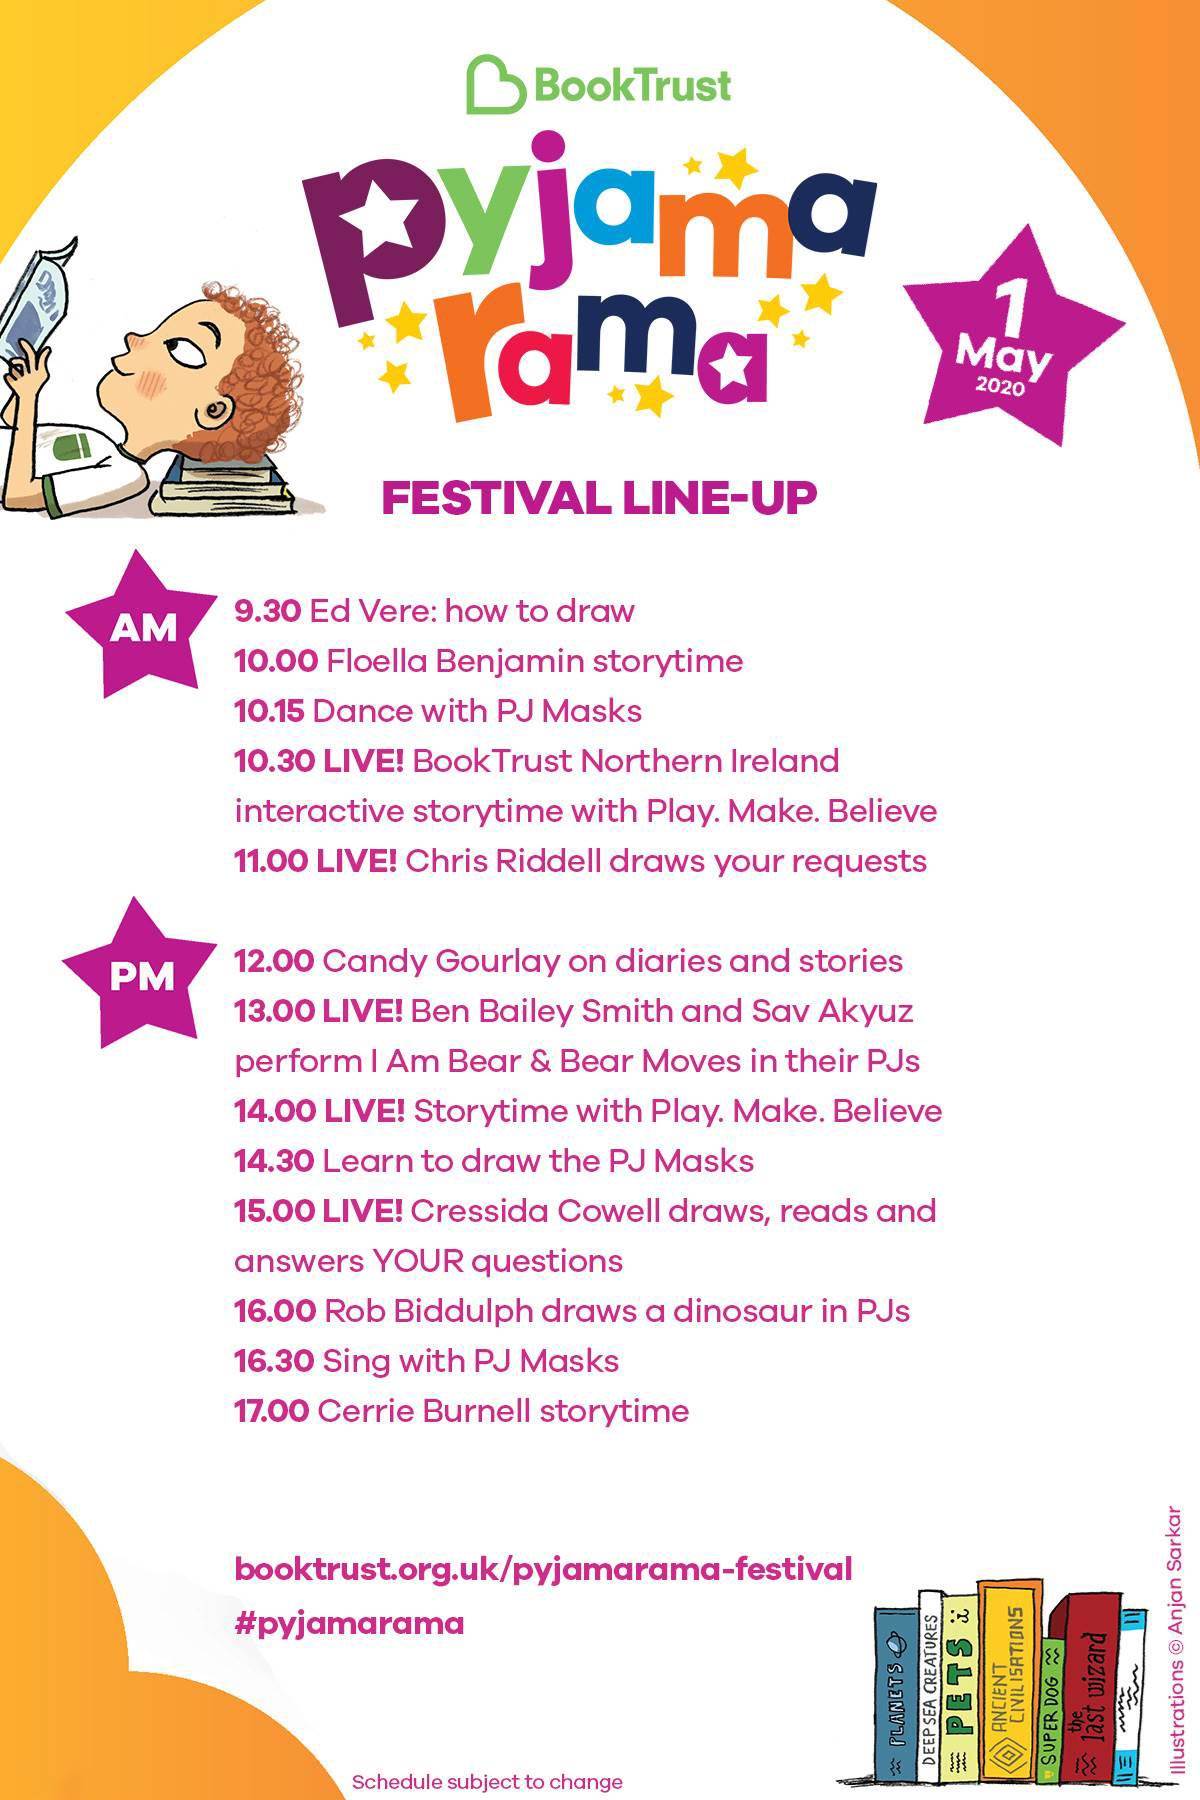 The Pyjamarama 2020 festival line-up